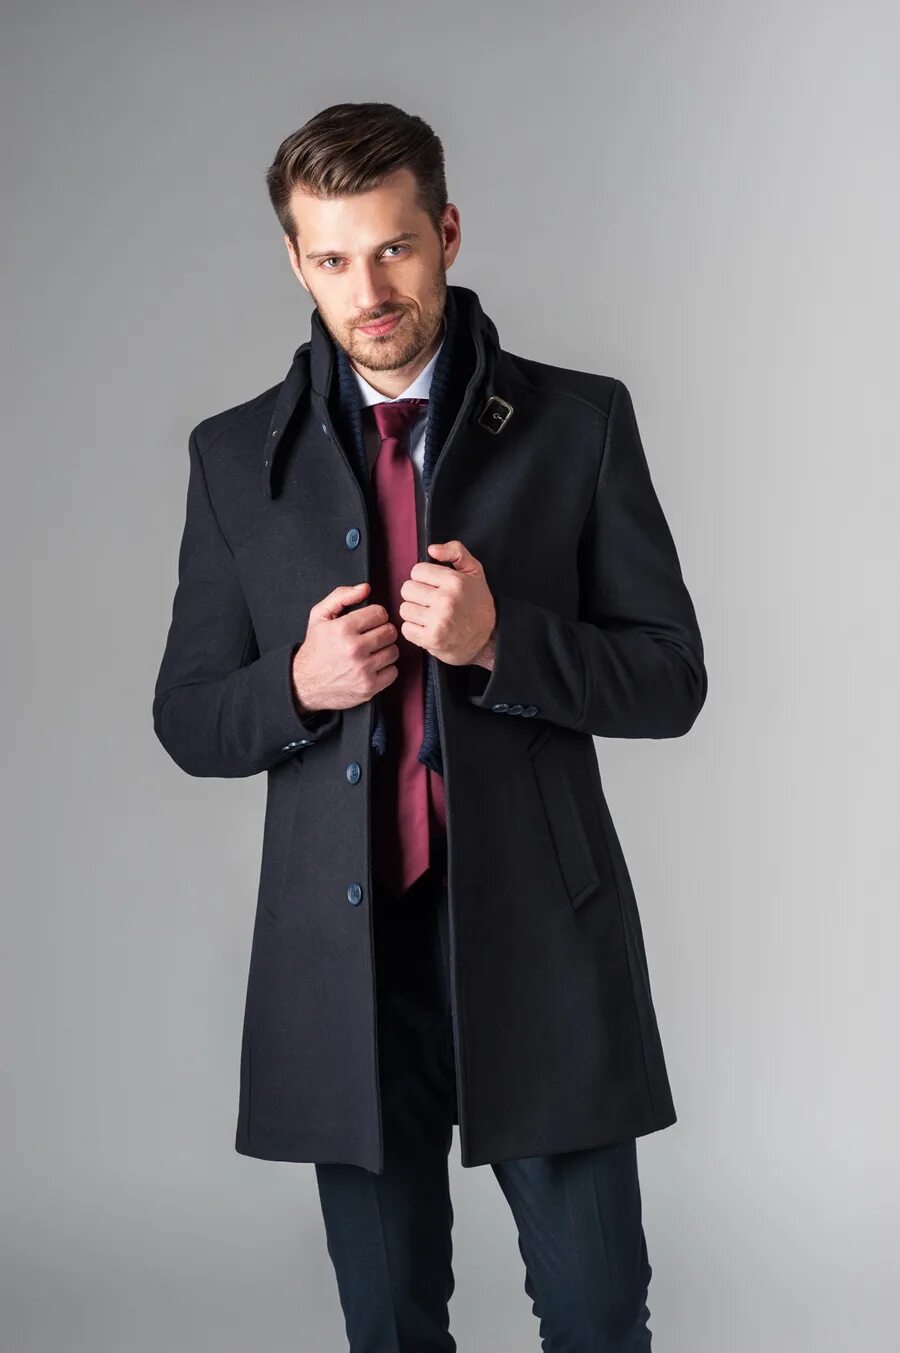 Veste Lana пальто мужское. Joop! 66025 Пальто мужское. Пальто мужское приталенное. Модное мужское пальто.